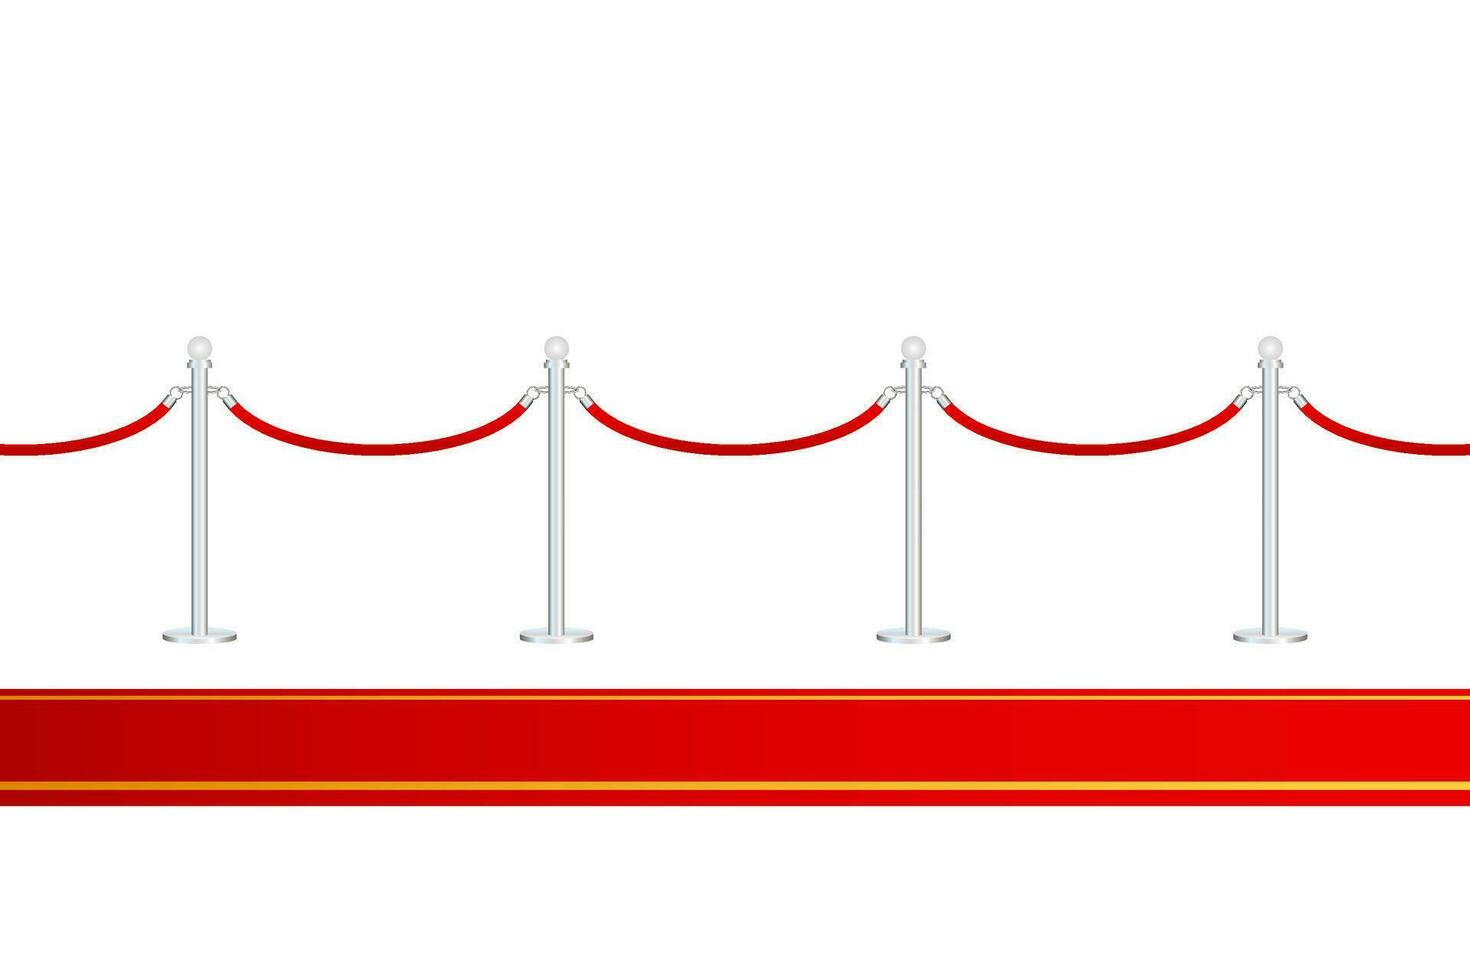 vermelho tapete com vermelho cordas em dourado pilares. exclusivo evento, filme pré estreia, gala, cerimônia, prêmios conceito. vetor estoque ilustração.